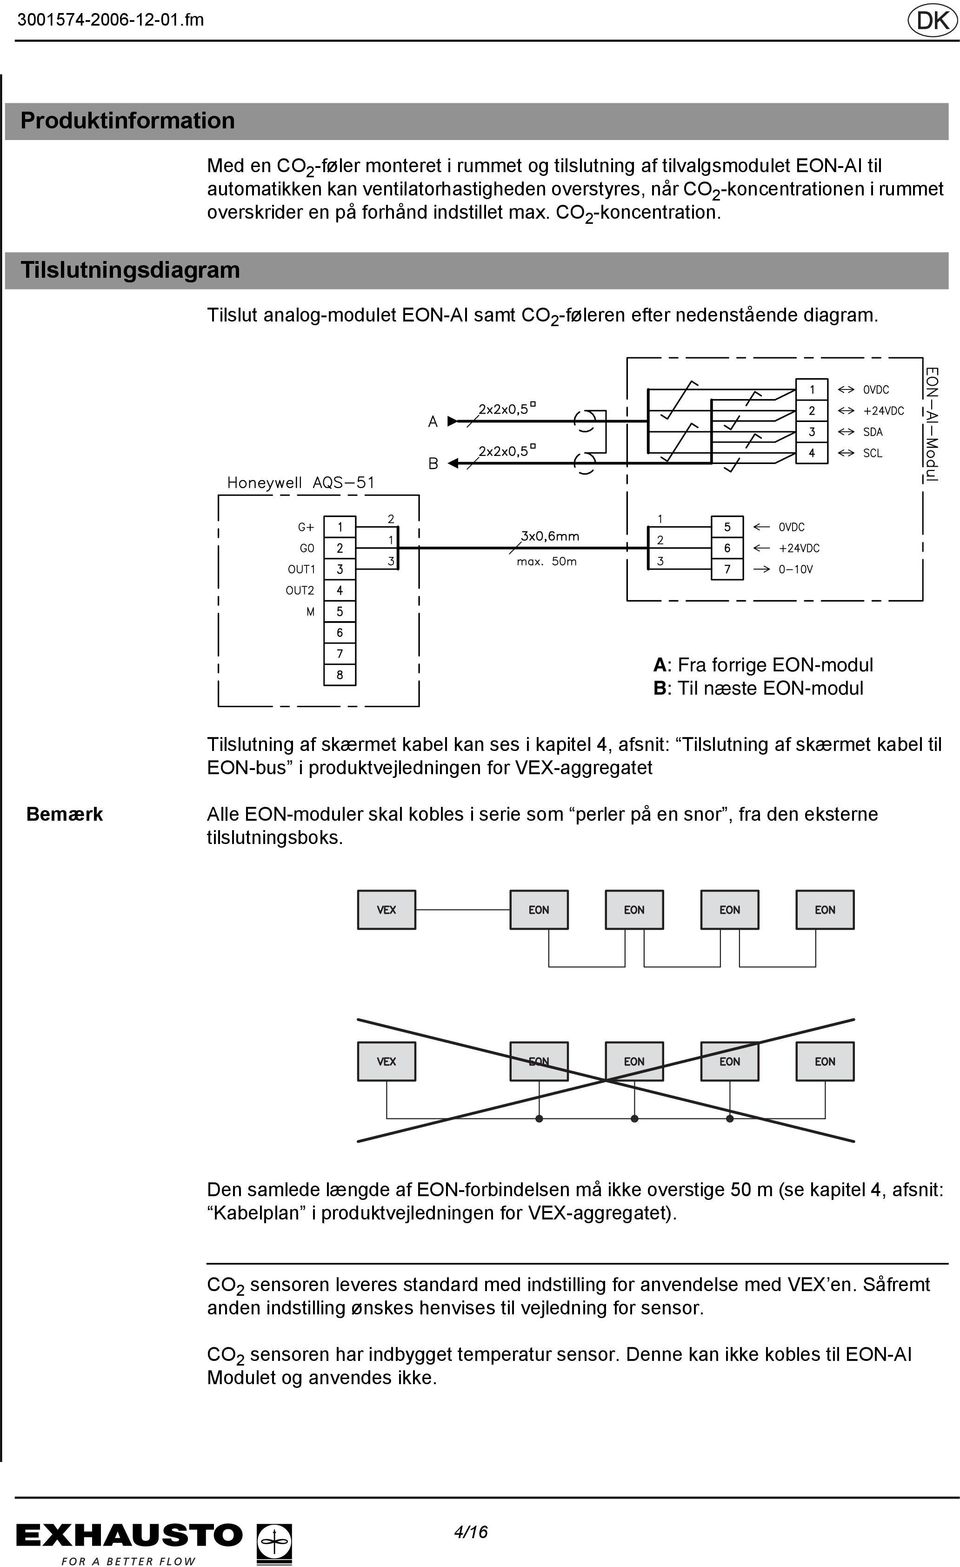 A: Fra forrige EON-modul B: Til næste EON-modul Tilslutning af skærmet kabel kan ses i kapitel 4, afsnit: Tilslutning af skærmet kabel til EON-bus i produktvejledningen for VEX-aggregatet Bemærk Alle